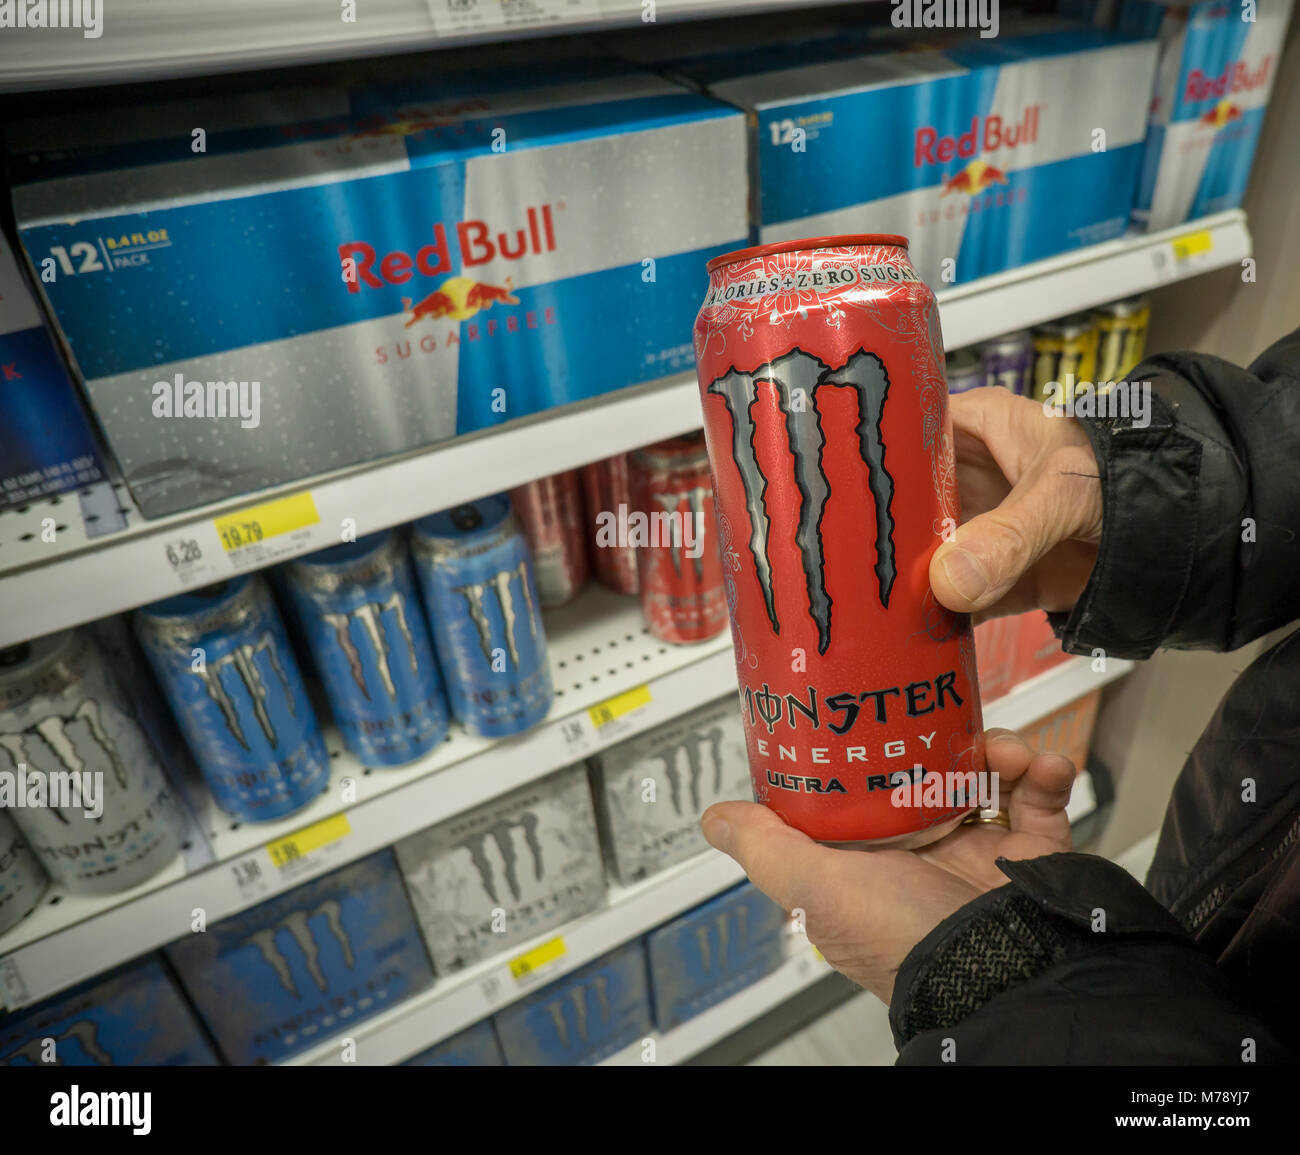 Ein shopper wählt eine Marke kann von Monster Energy Drink über die Red Bull Wettbewerber in einem Supermarkt in New York am Dienstag, 27. Februar 2018. Monster Getränke wird voraussichtlich im vierten Quartal am 28. Februar nach der Glocke zu berichten. (Â© Richard B. Levine) Stockfoto